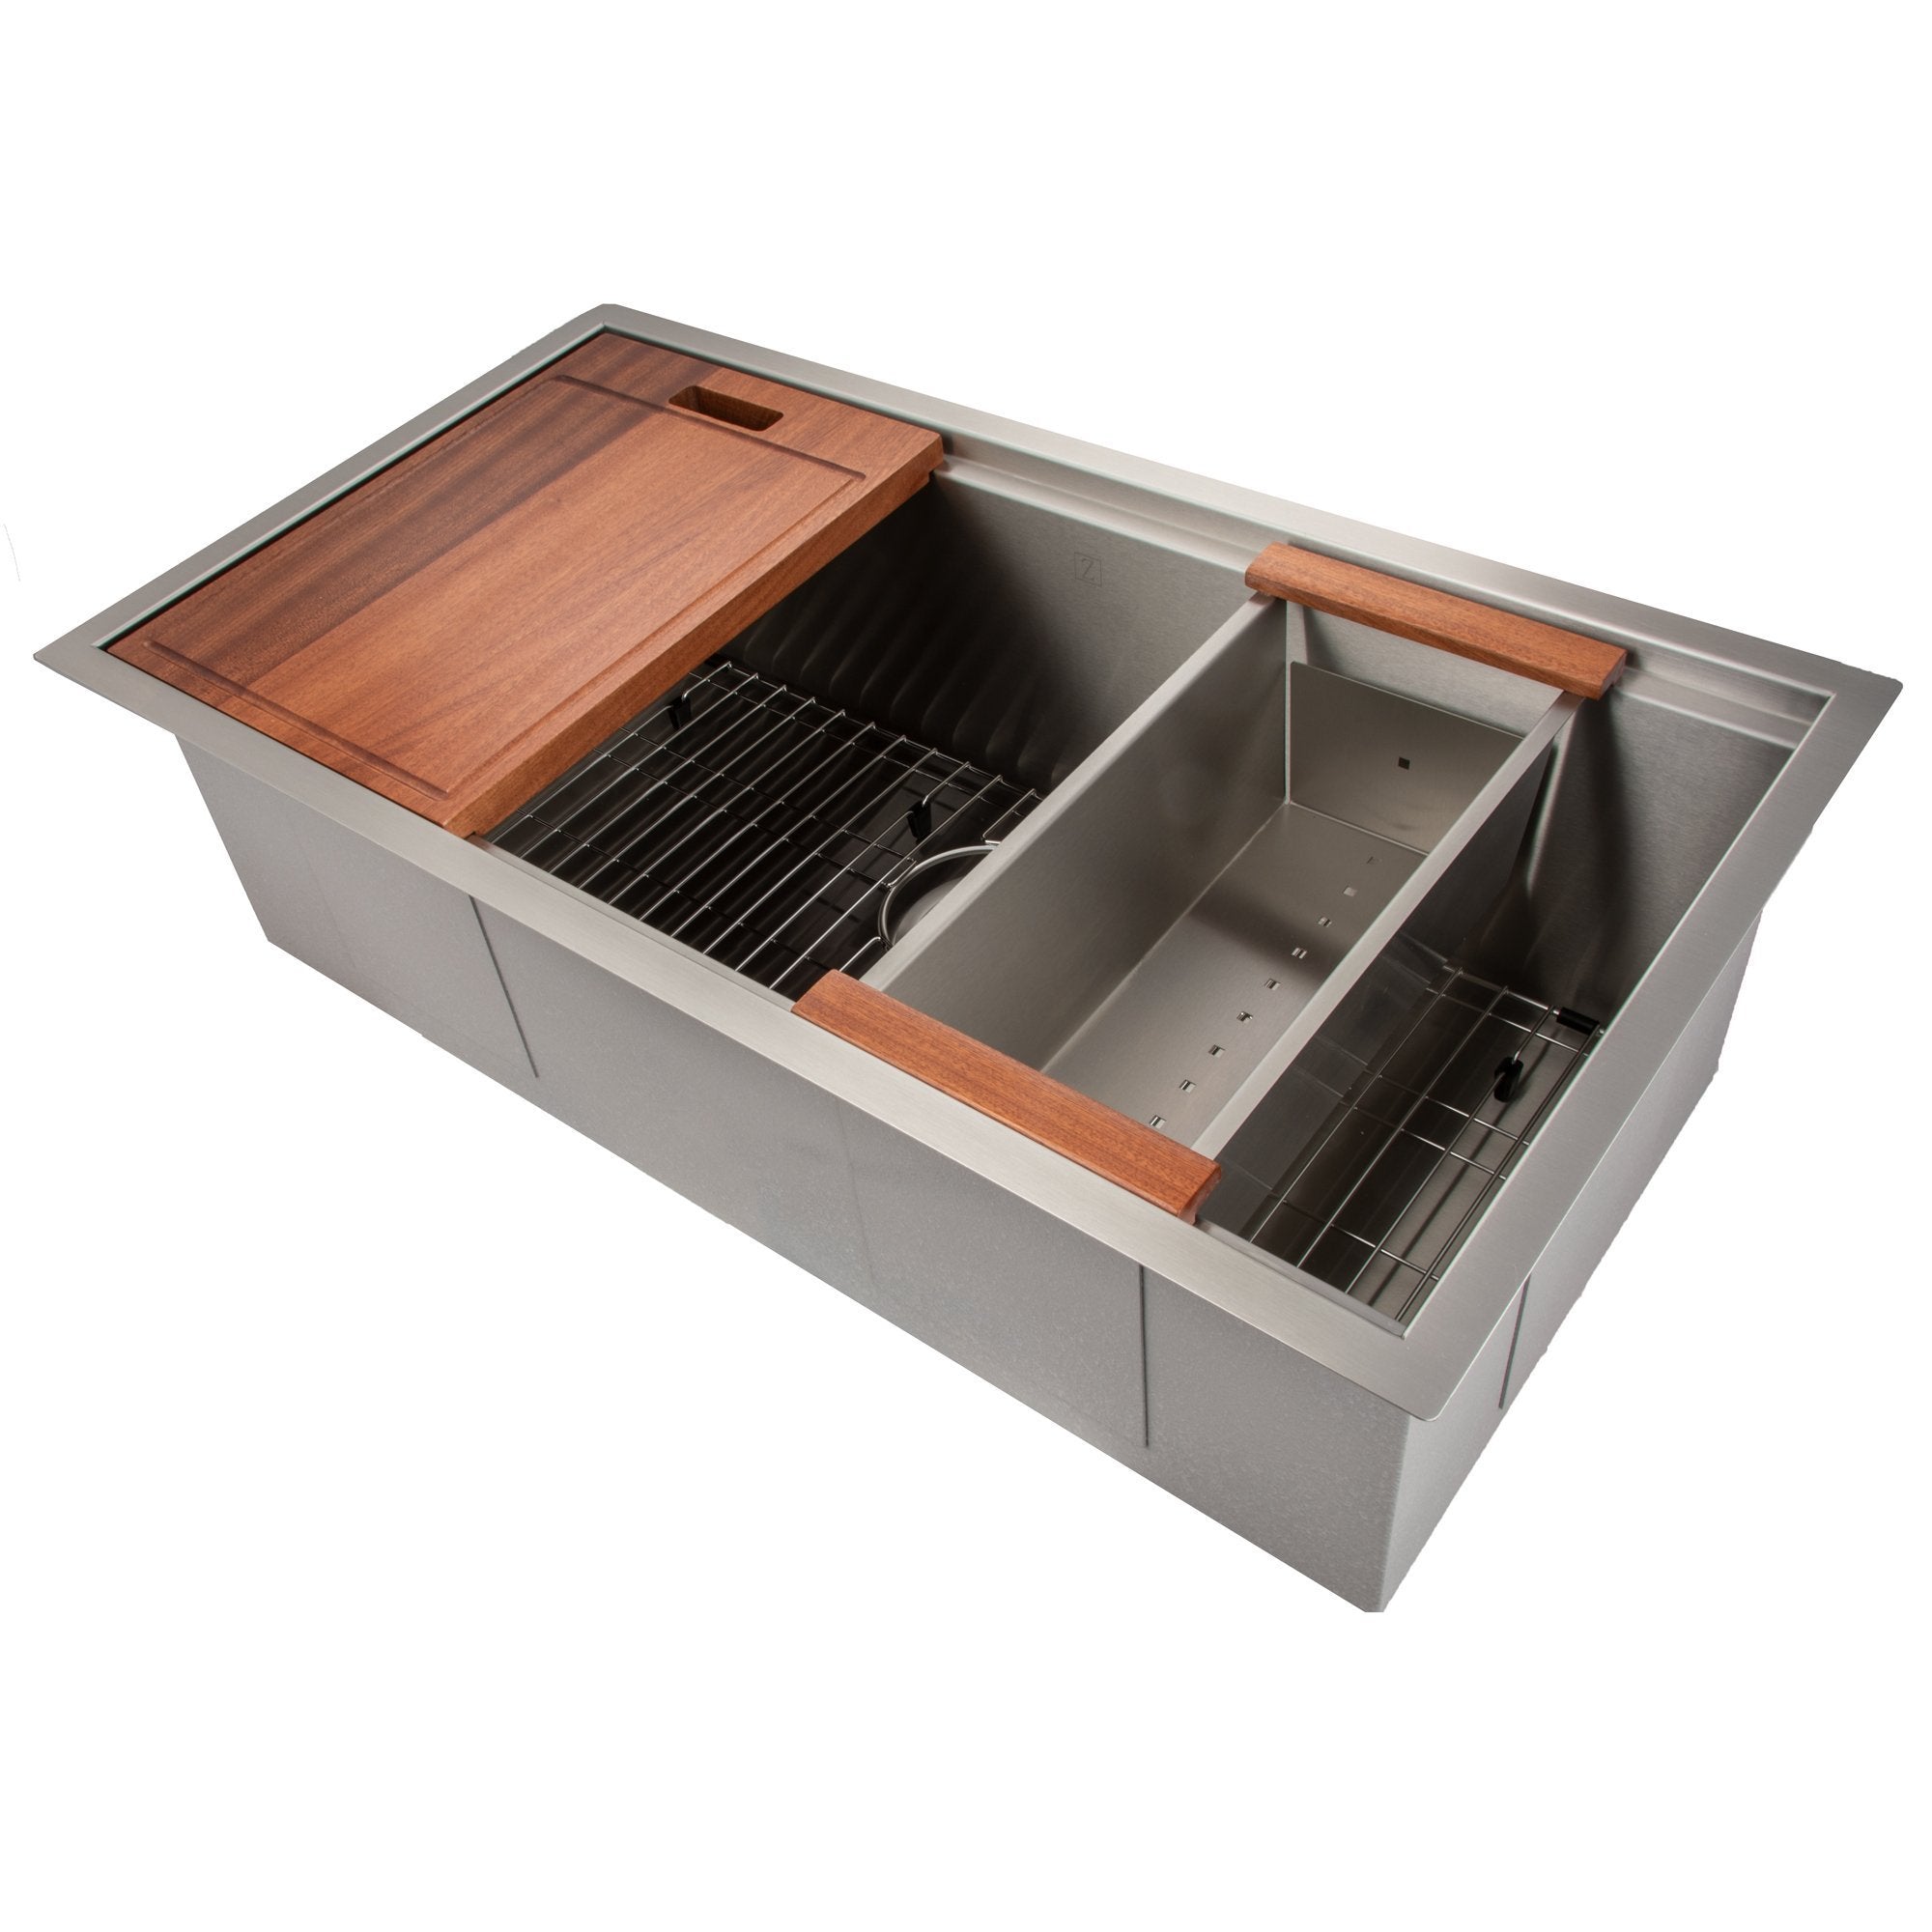 https://www.rustickitchenandbath.com/cdn/shop/products/zline-33-designer-series-undermount-single-bowl-ledge-sink-sls-sinks-zline-kitchen-and-bath-360514.jpg?v=1658334958